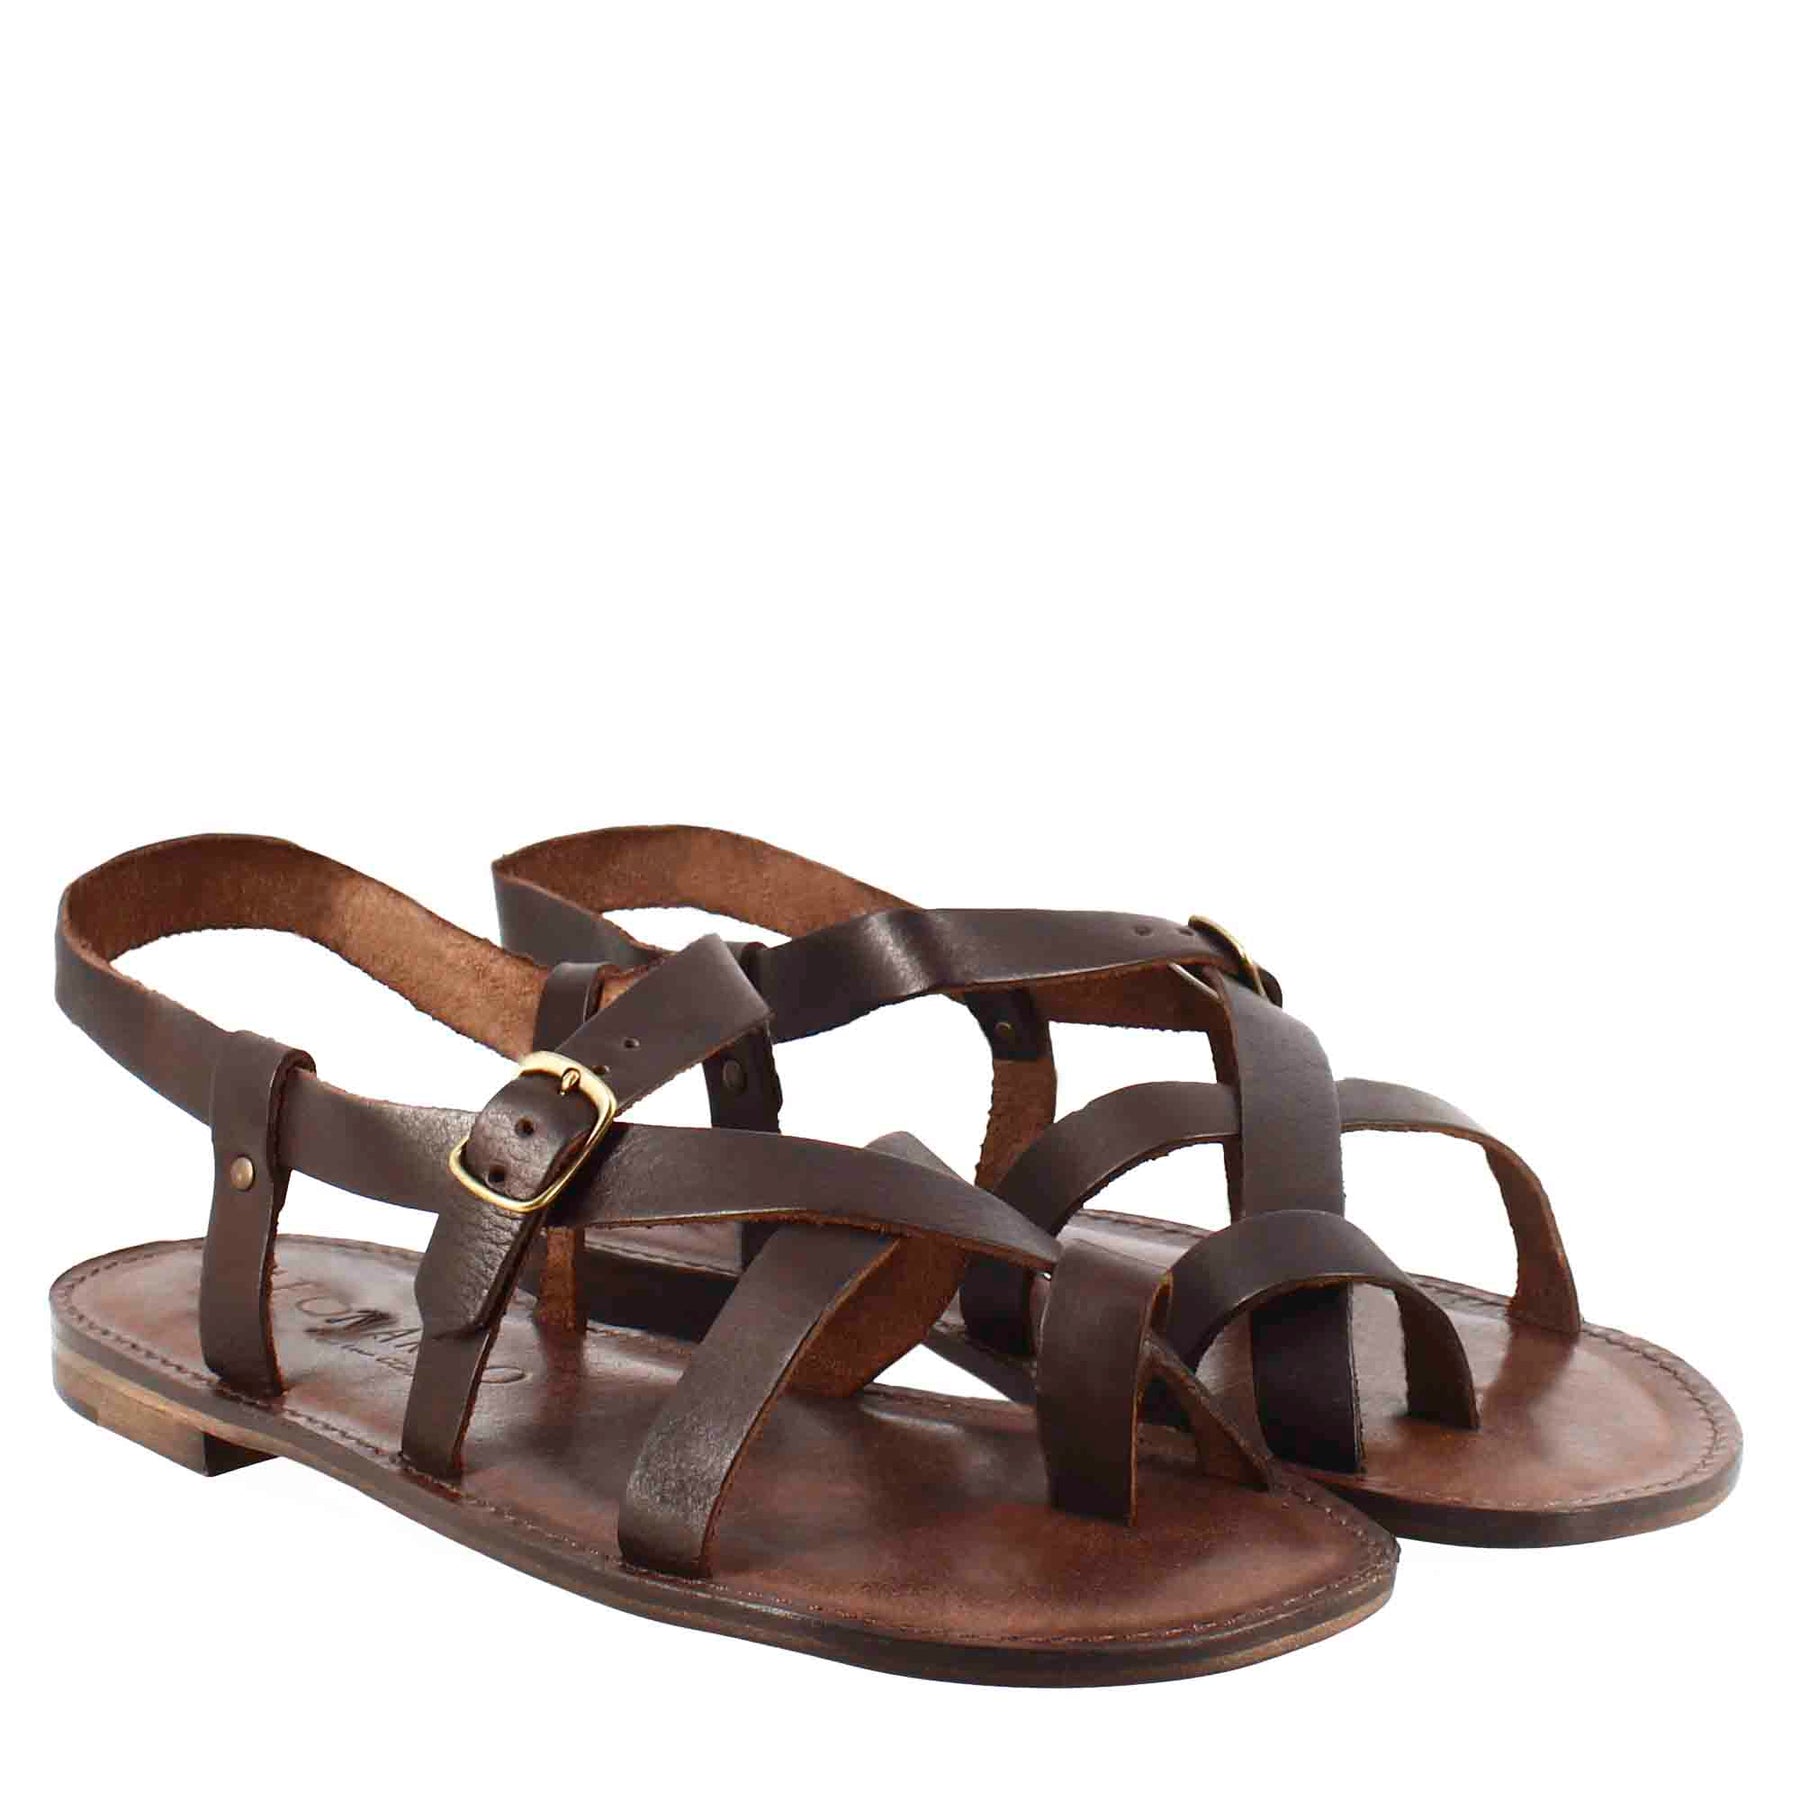 Men's gladiator model Rimini sandals in brown leather